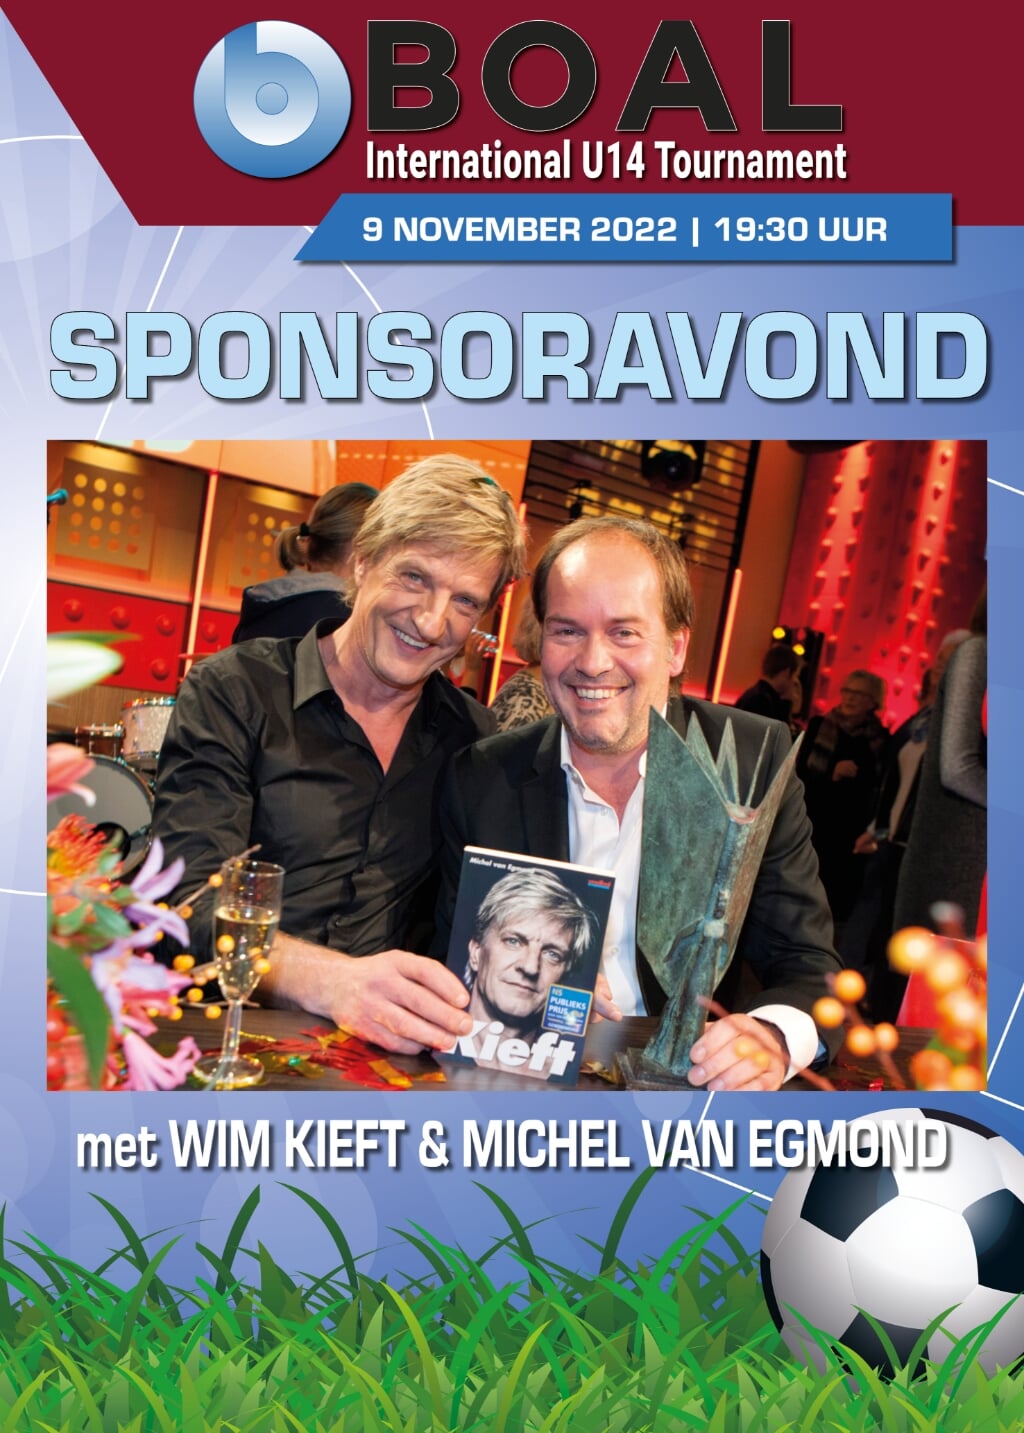 Schrijver Michel van Egmond bracht in 2014 in samenwerking met Wim Kieft het boek Kieft uit, met veel aandacht voor zijn alcohol- en drugsverslaving. Van Egmond was om het verleden werkzaam op de sportredactie van de Westlandsche Courant.